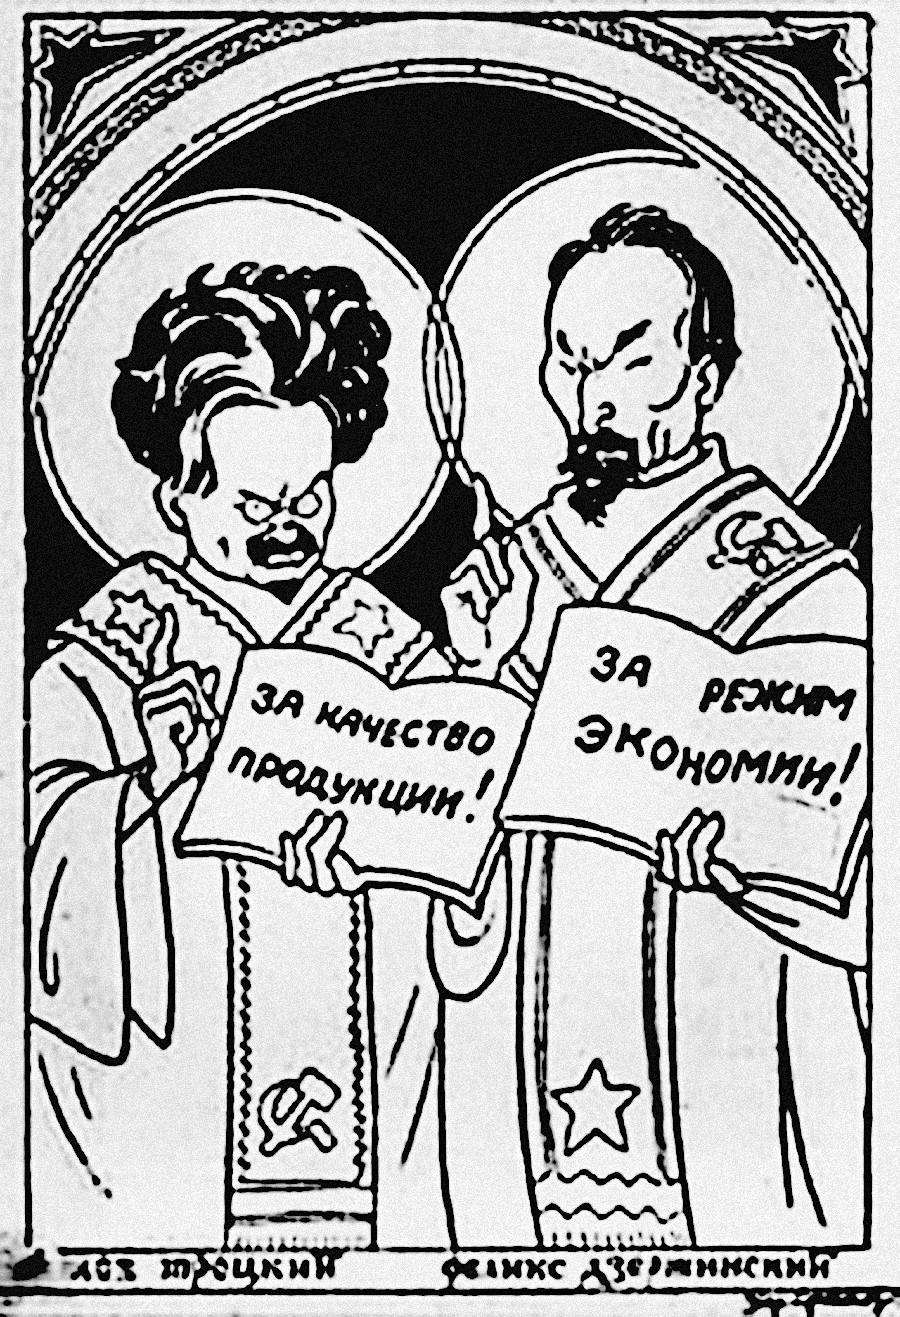 Лав Троцки и Феликс Дзержински, који је средином 20-их година био директор Врховног већа народне економије, приказани су као свеци. Троцки држи натпис: „За квалитет производње”, а Дзержински: „За режим штедње”.